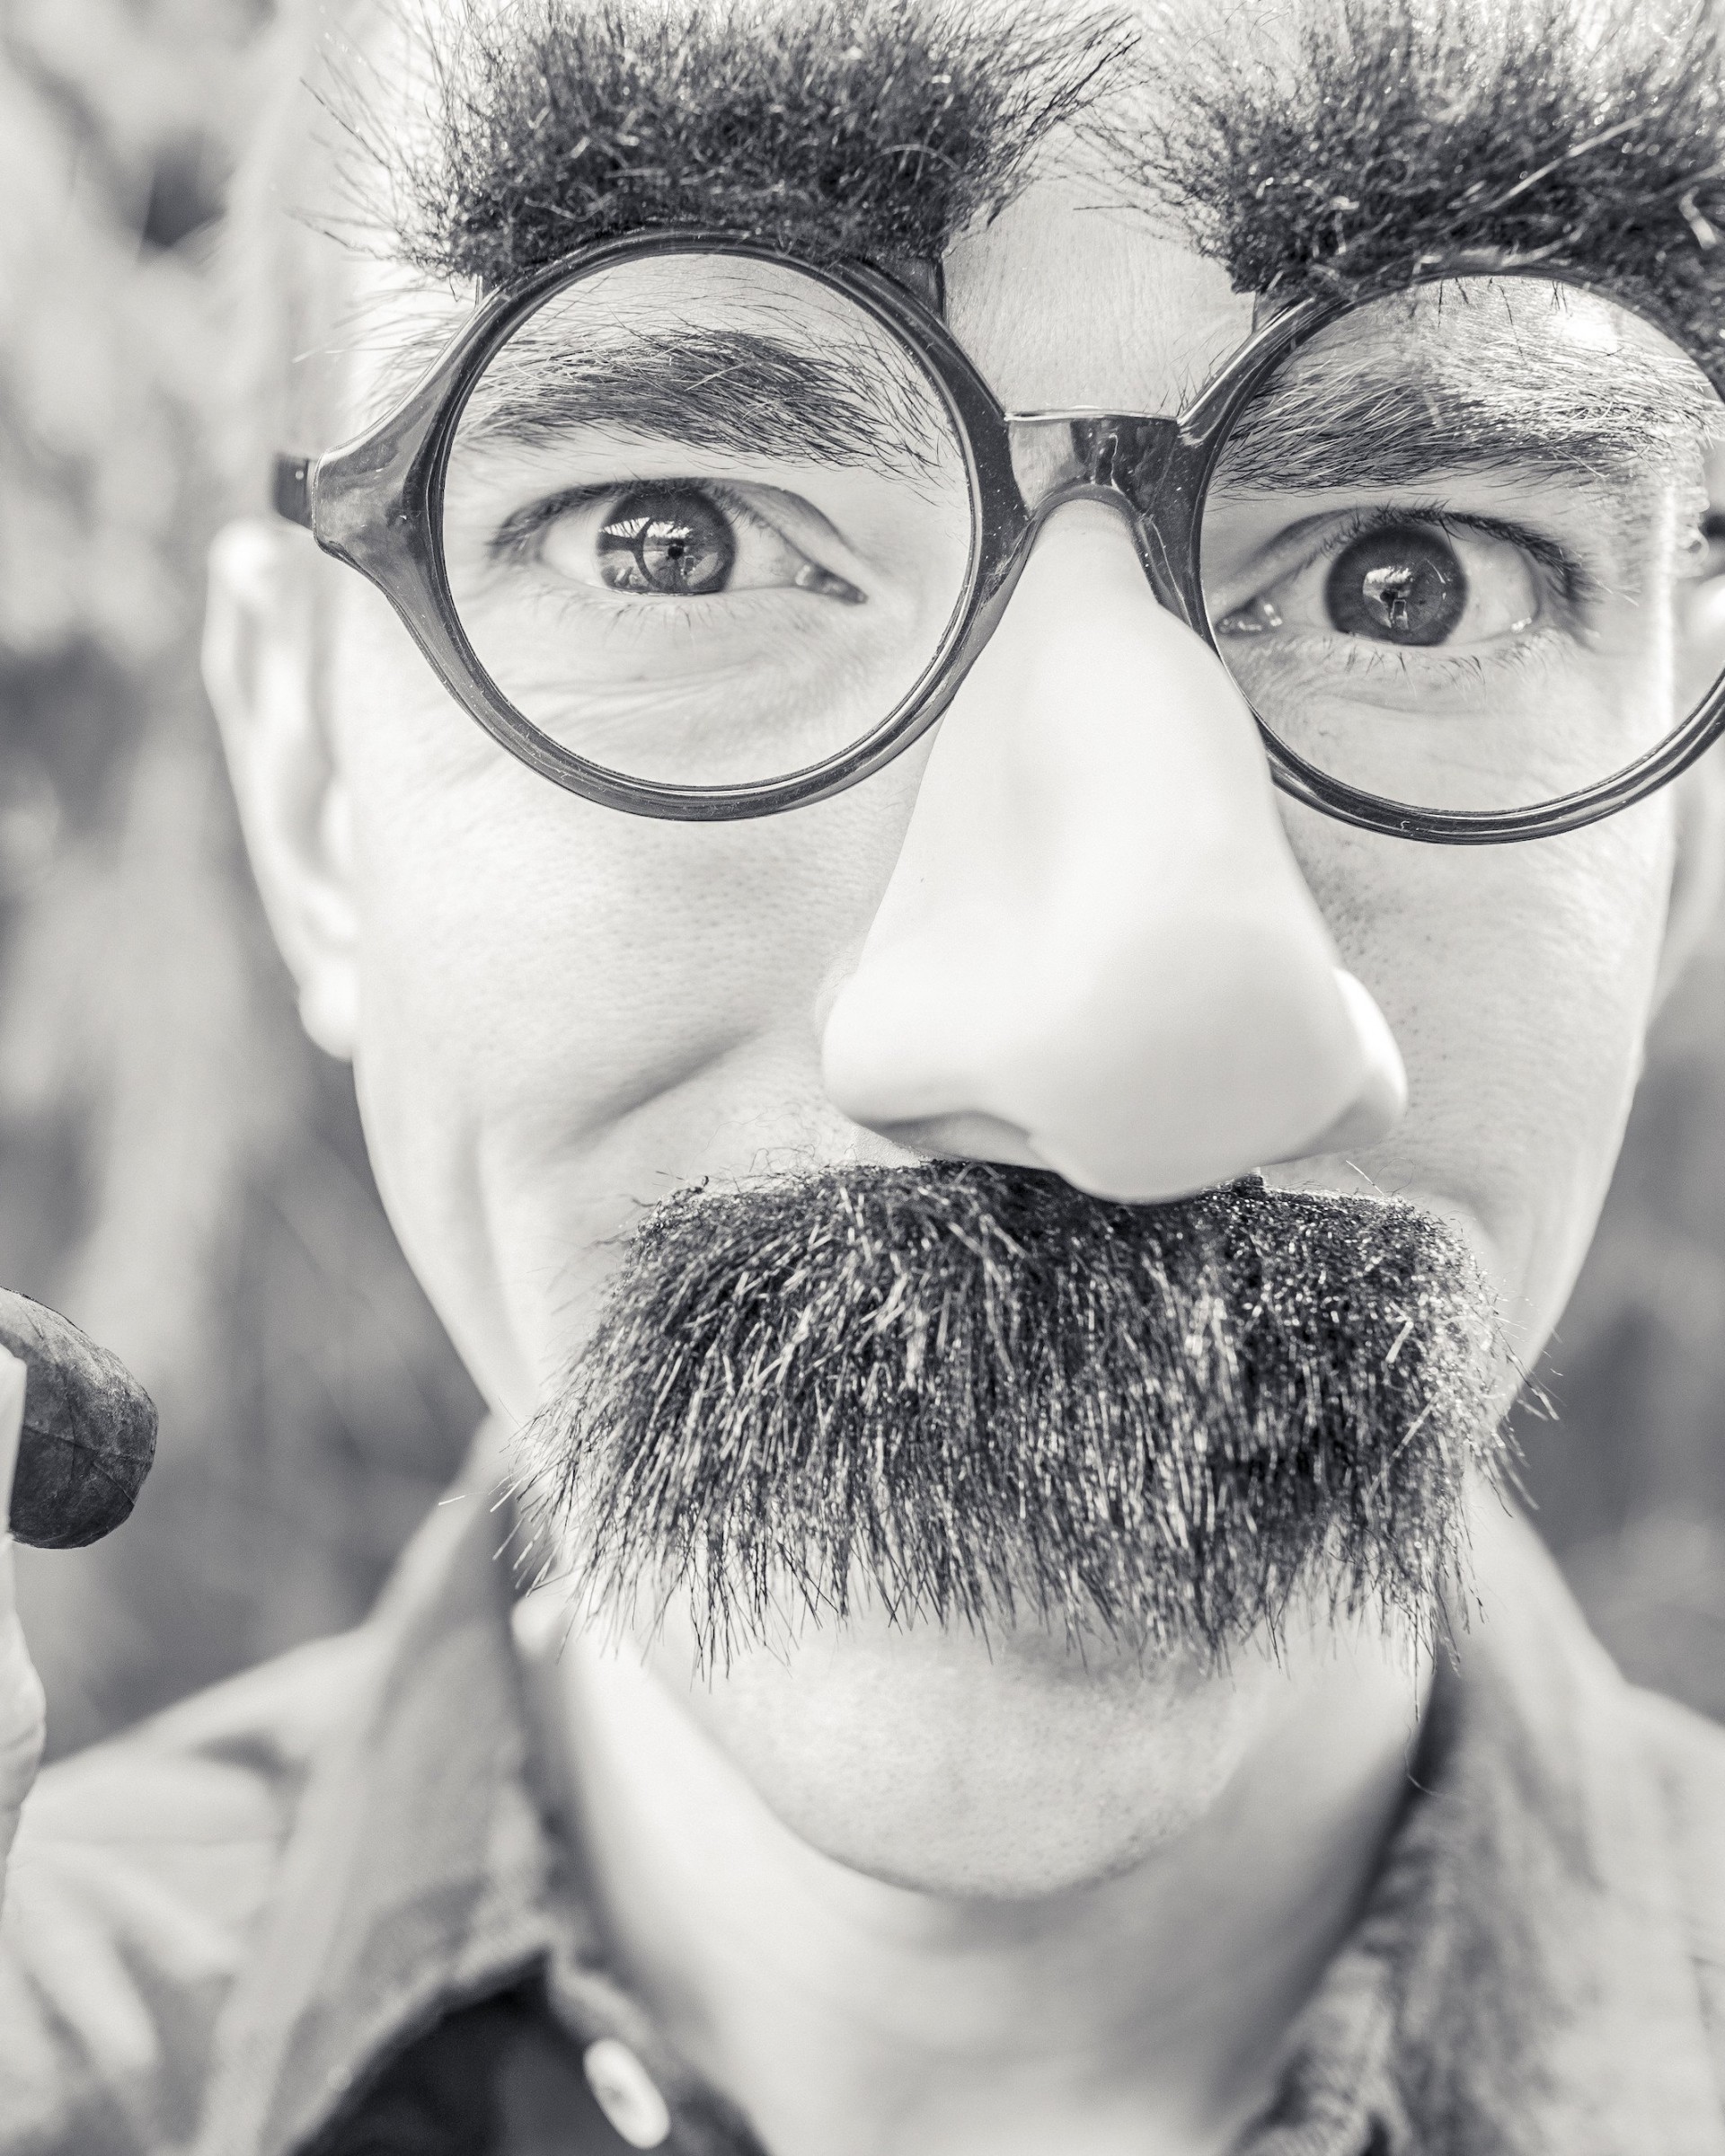 Groucho Glasses Man Wallpaper for Google Nexus 7